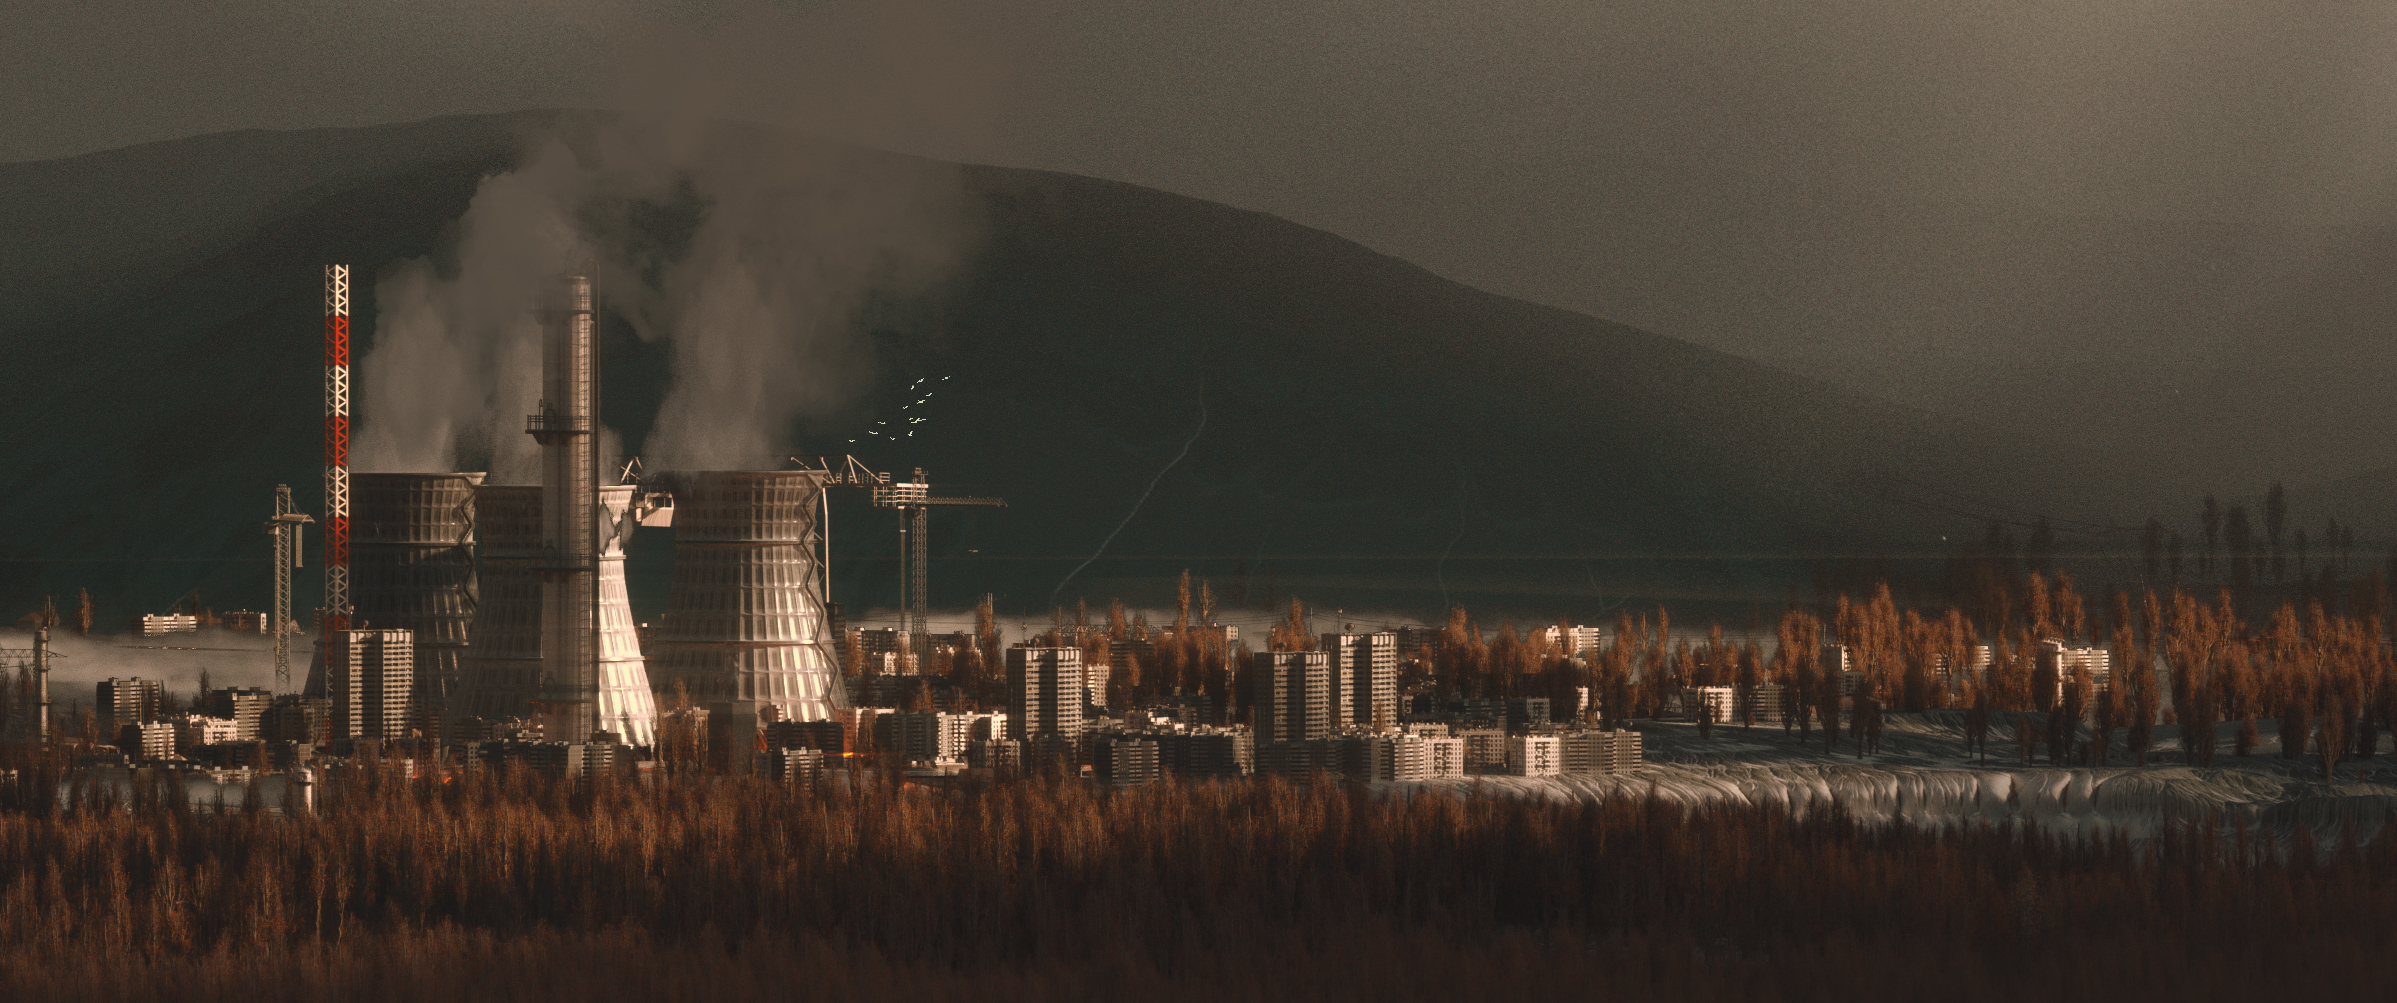 Factory Smoke City Landscape Landscape Digital Concept Art Cinema4D Cinema4D OctaneRender OctaneRend 2397x1003